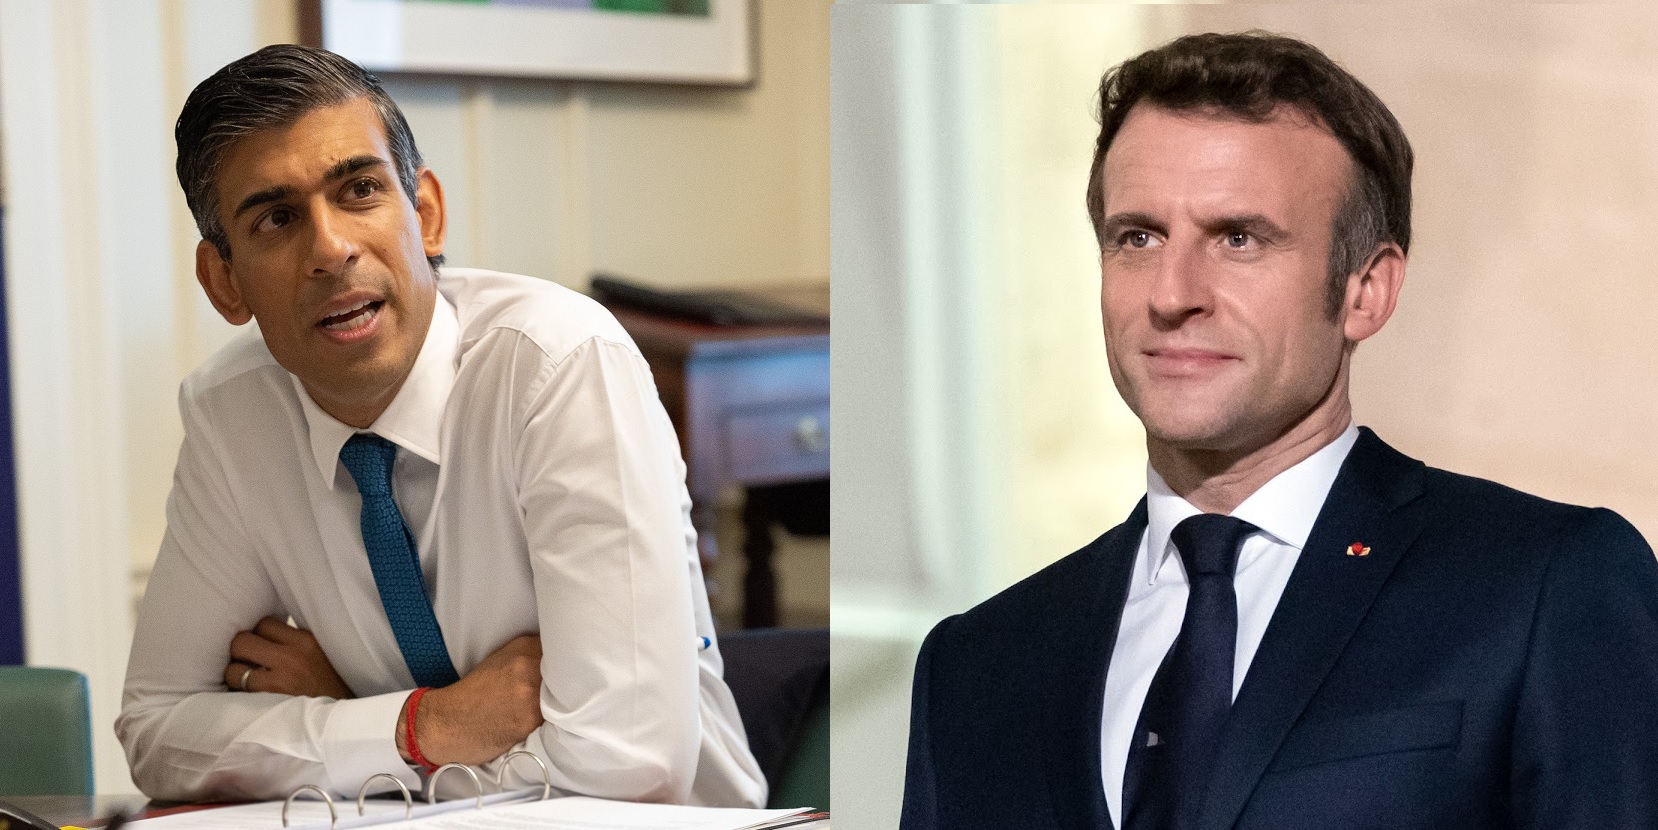 Γαλλία-Βρετανία: Μακρόν και Σούνακ προετοιμάζουν διμερή σύνοδο κορυφής για το 2023